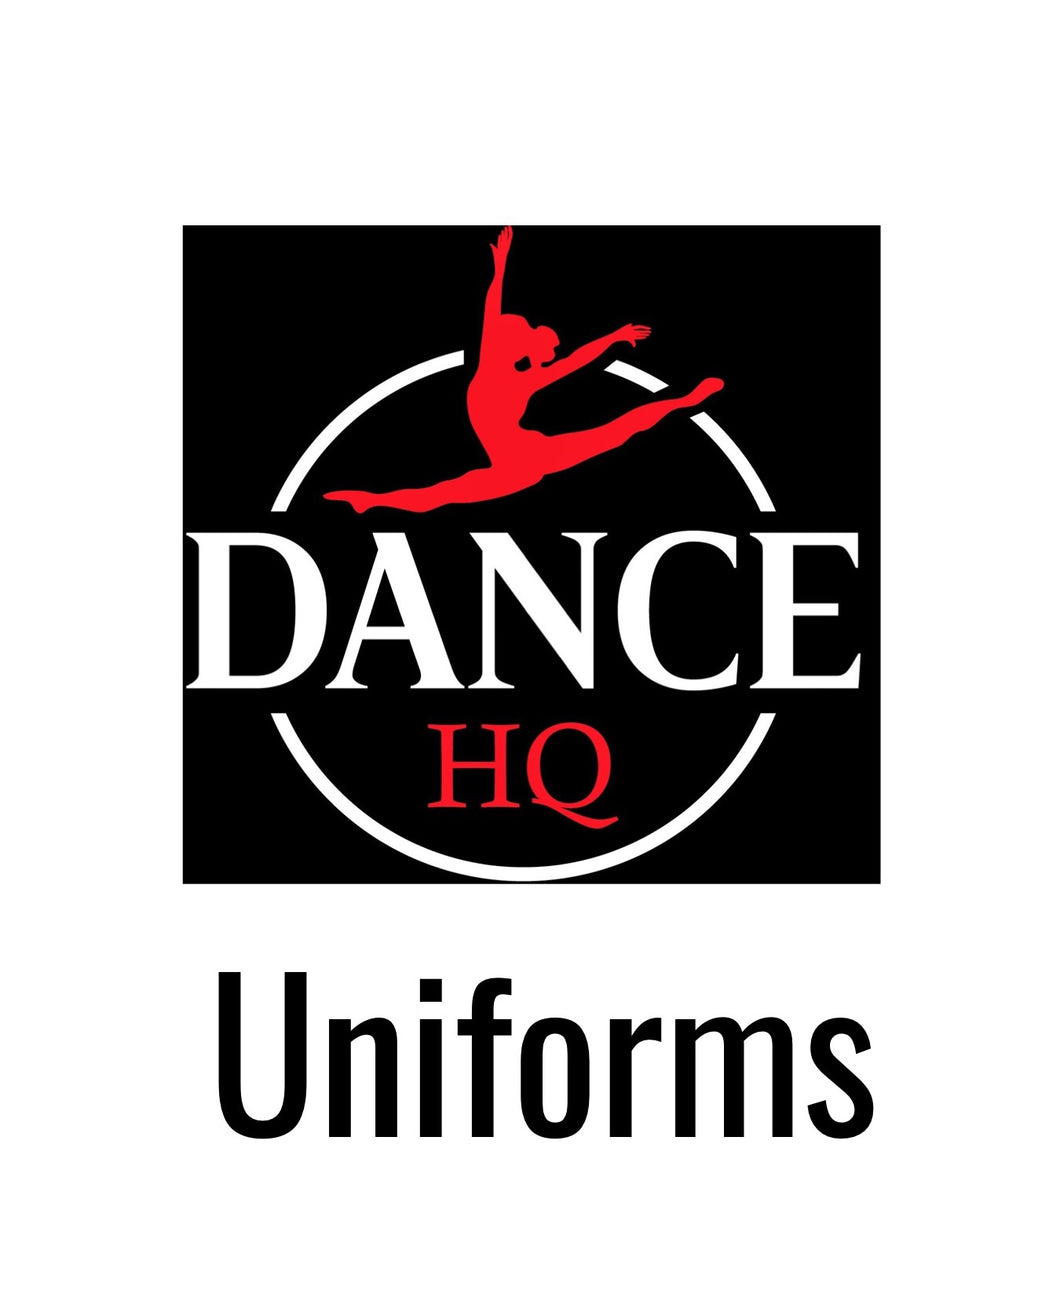 Dance HQ Taupo - Ballet Uniforms